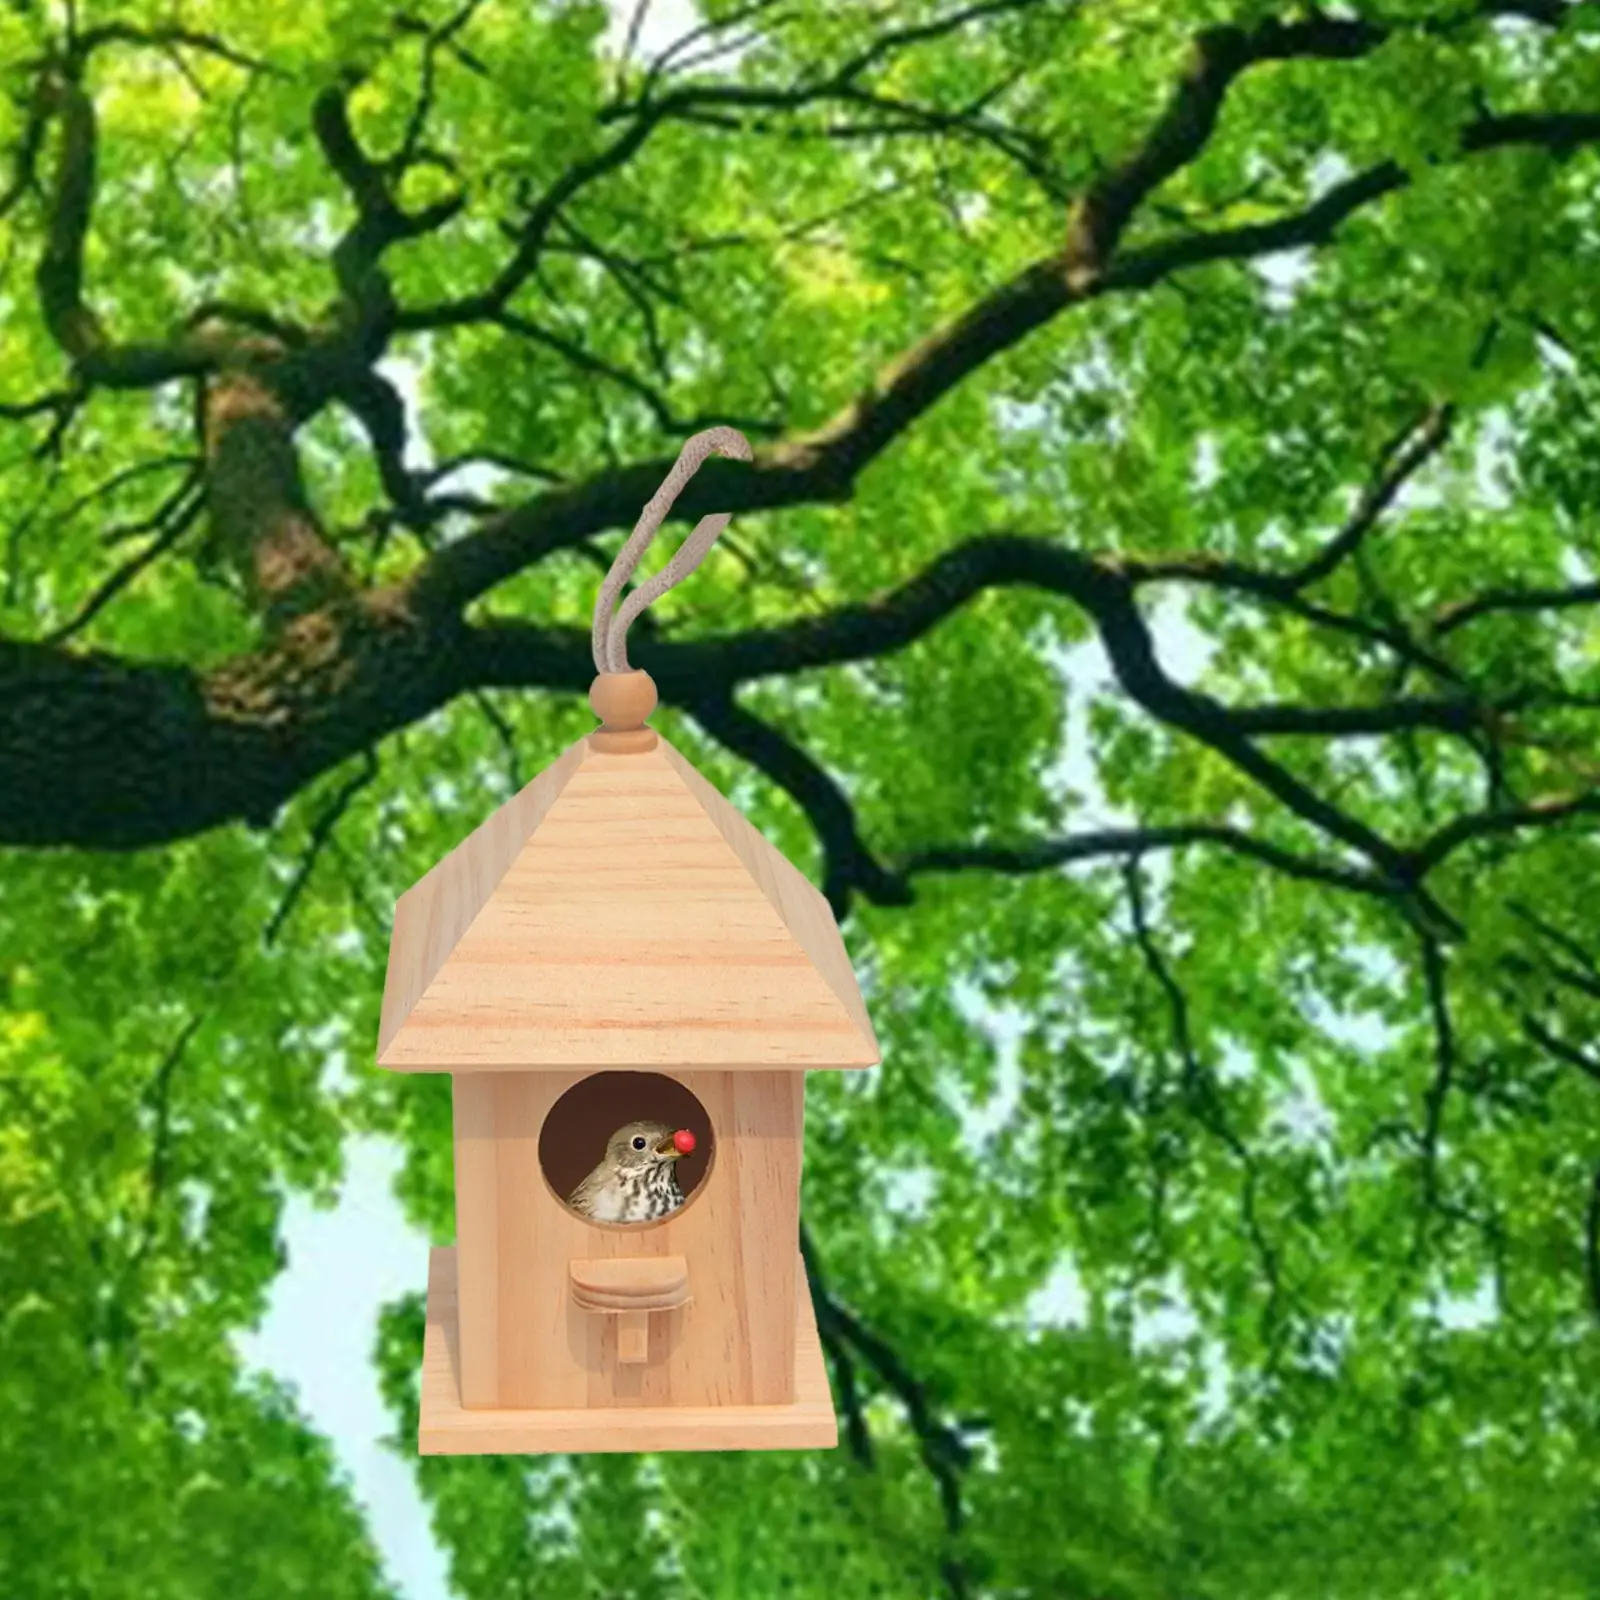 Wooden Birdhouse DIY Arts Crafts with Viewing Window Wood Decoration Birdcage for Yard Garden Backyard Children Adult Wild Bird